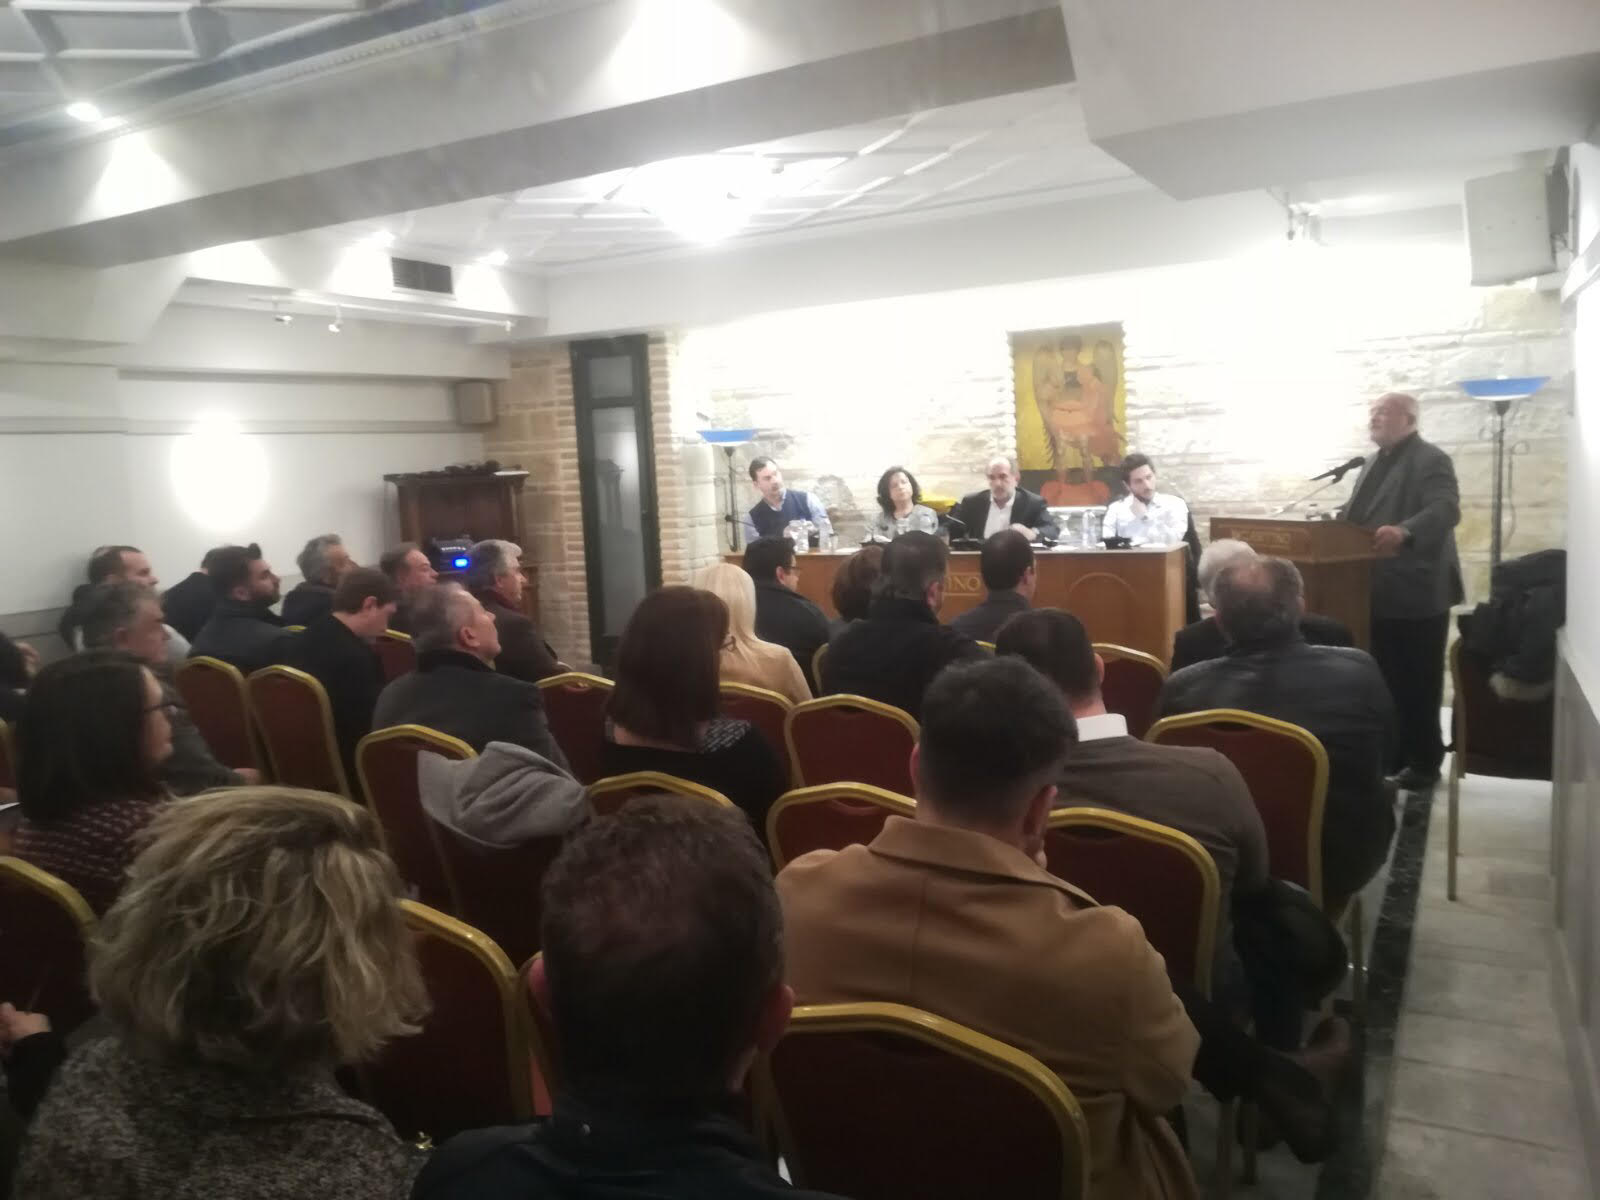 Απόστολος Κατσιφάρας: Σε πλήρη οργανωτική και πολιτική διάταξη η περιφερειακή παράταξη “Δυτική Ελλάδα - Δικαίωμα στην Πρόοδο” (Photos)